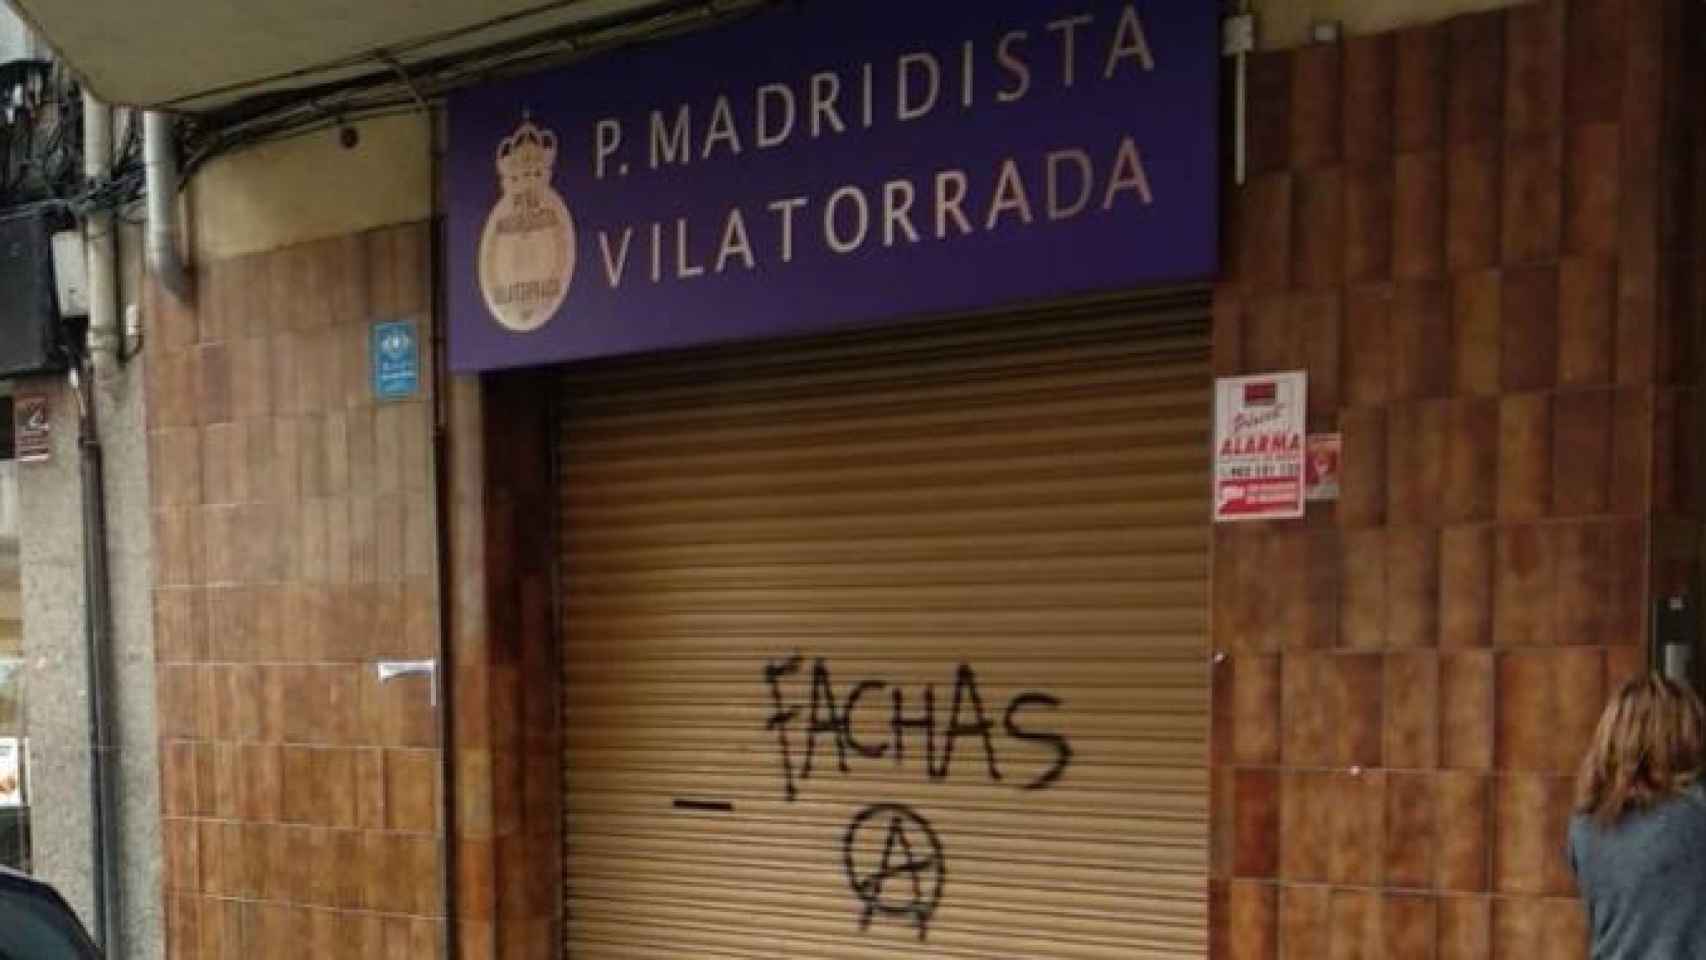 Imagen de la persiana de la Peña Madridista Vilatorrada, atacada esta madrugada con una pintada amenazante / CG